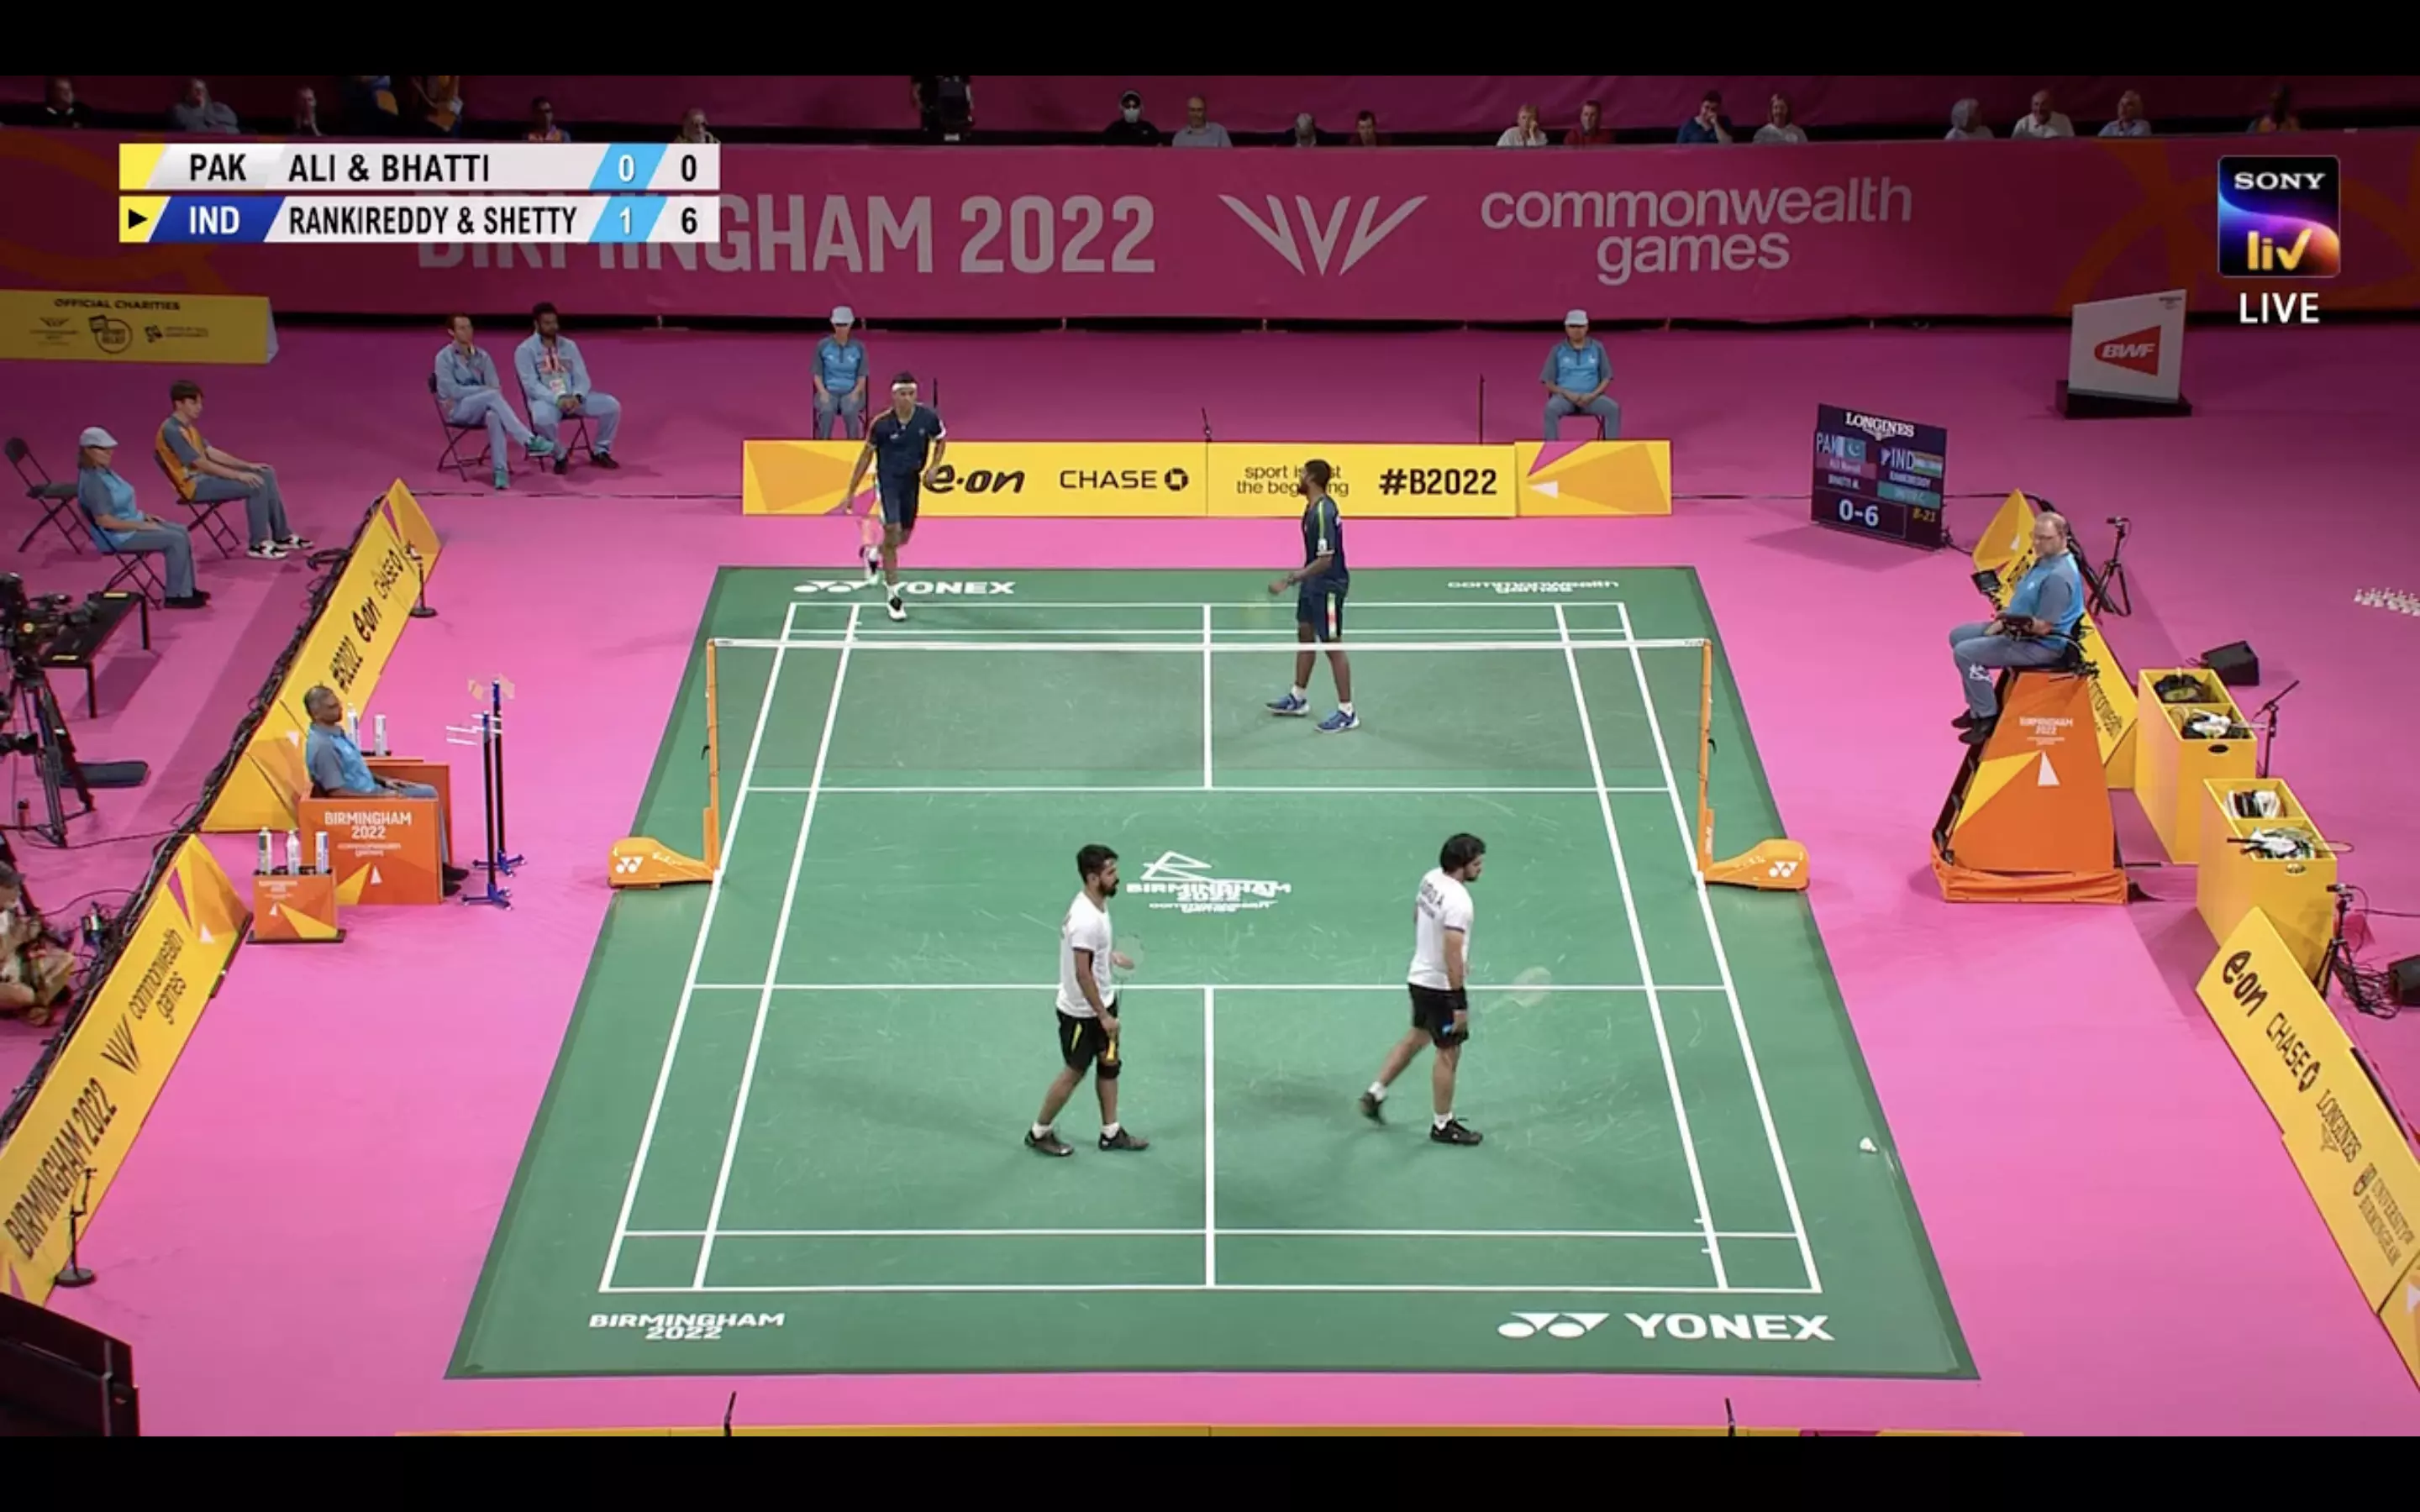 badminton commonwealth games 2022 live score